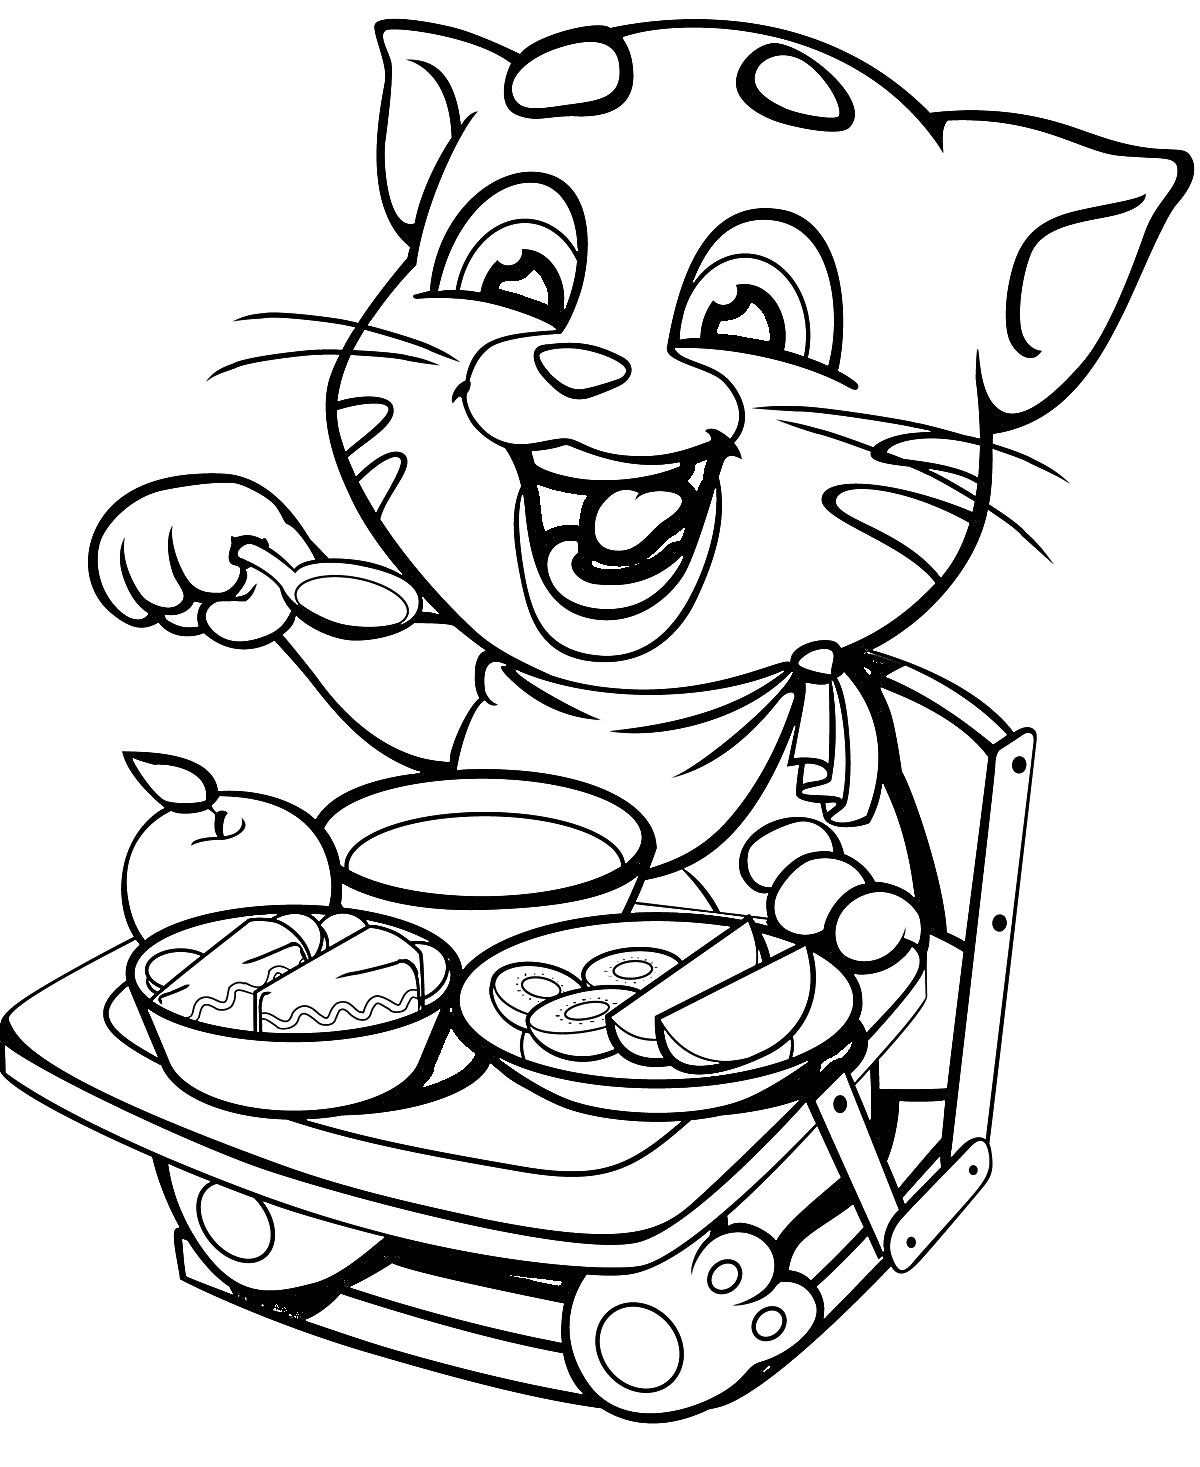 Раскраска Кот ест за столом, держа ложку, с яблоком, чашкой, тарелкой еды и кружкой на подносе.